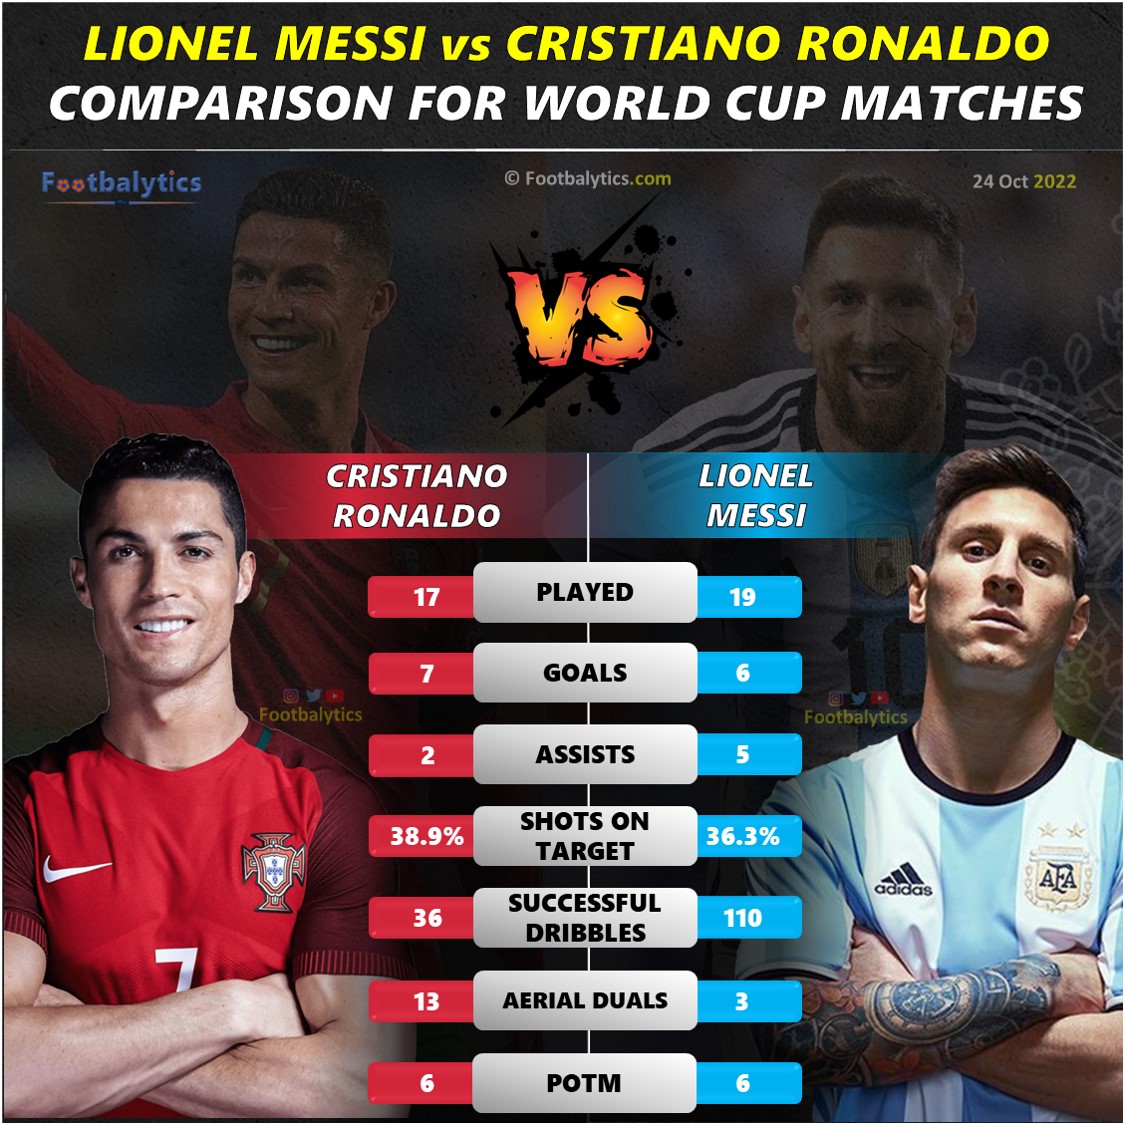 FIFA World Cup Lionel Messi vs Cristiano Ronaldo Stats Analysis